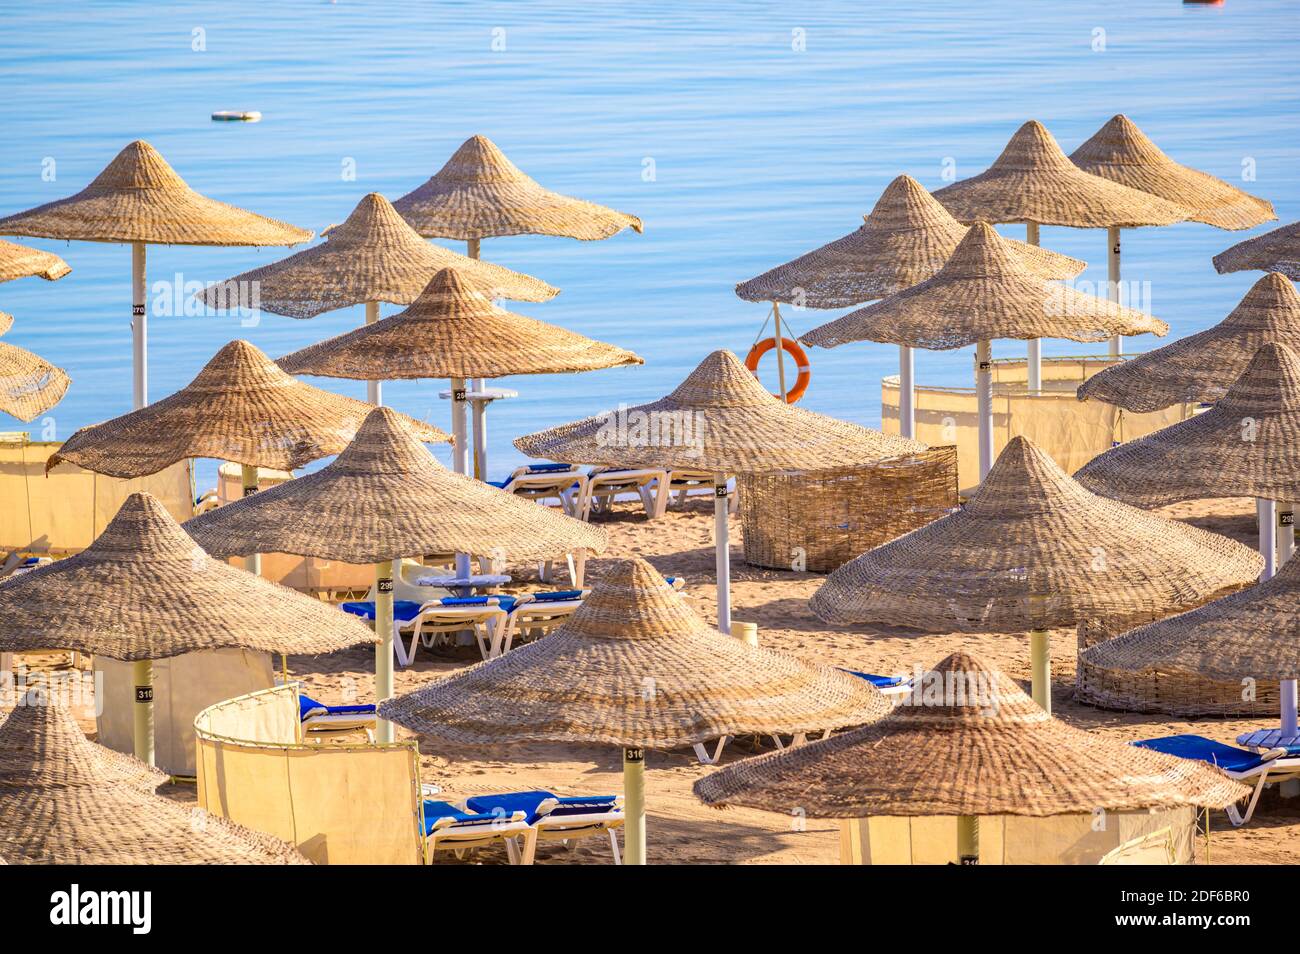 Entspannung am paradiesischen Strand - Chaise Lounge und Sonnenschirme - Reiseziel Hurghada, Ägypten Stockfoto